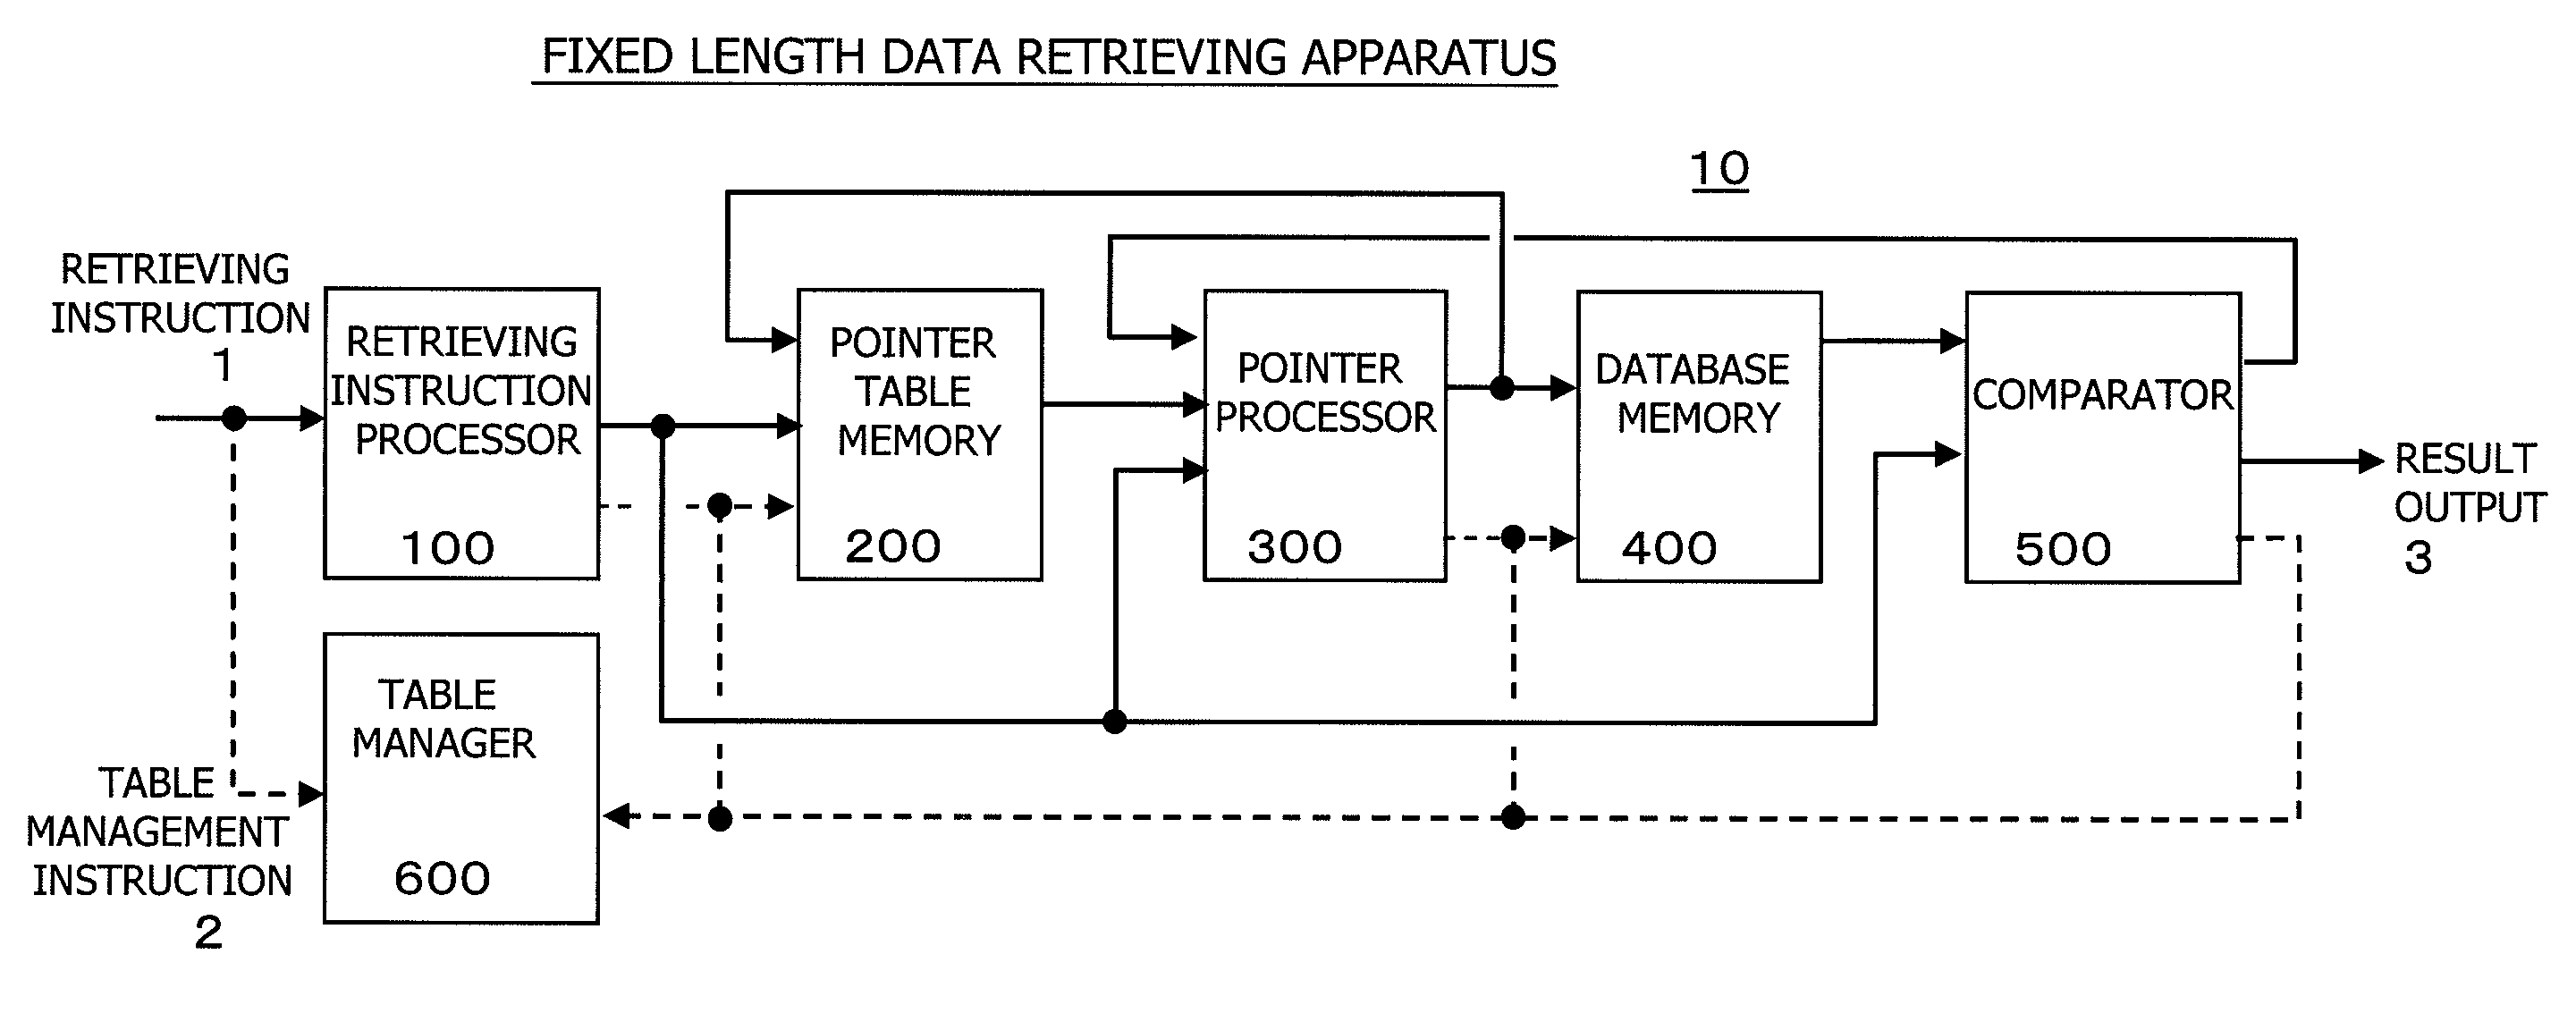 Retrieving Method for Fixed Length Data